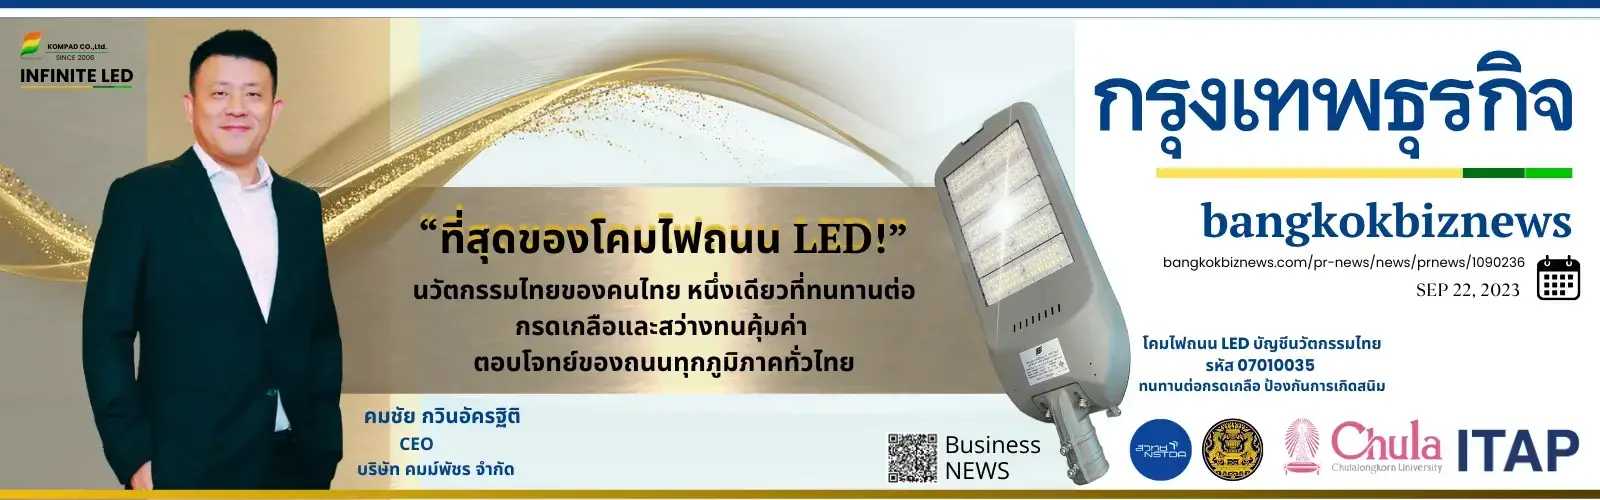 กรุงเทพธุรกิจ โคมไฟถนนนวัตกรรมไทย